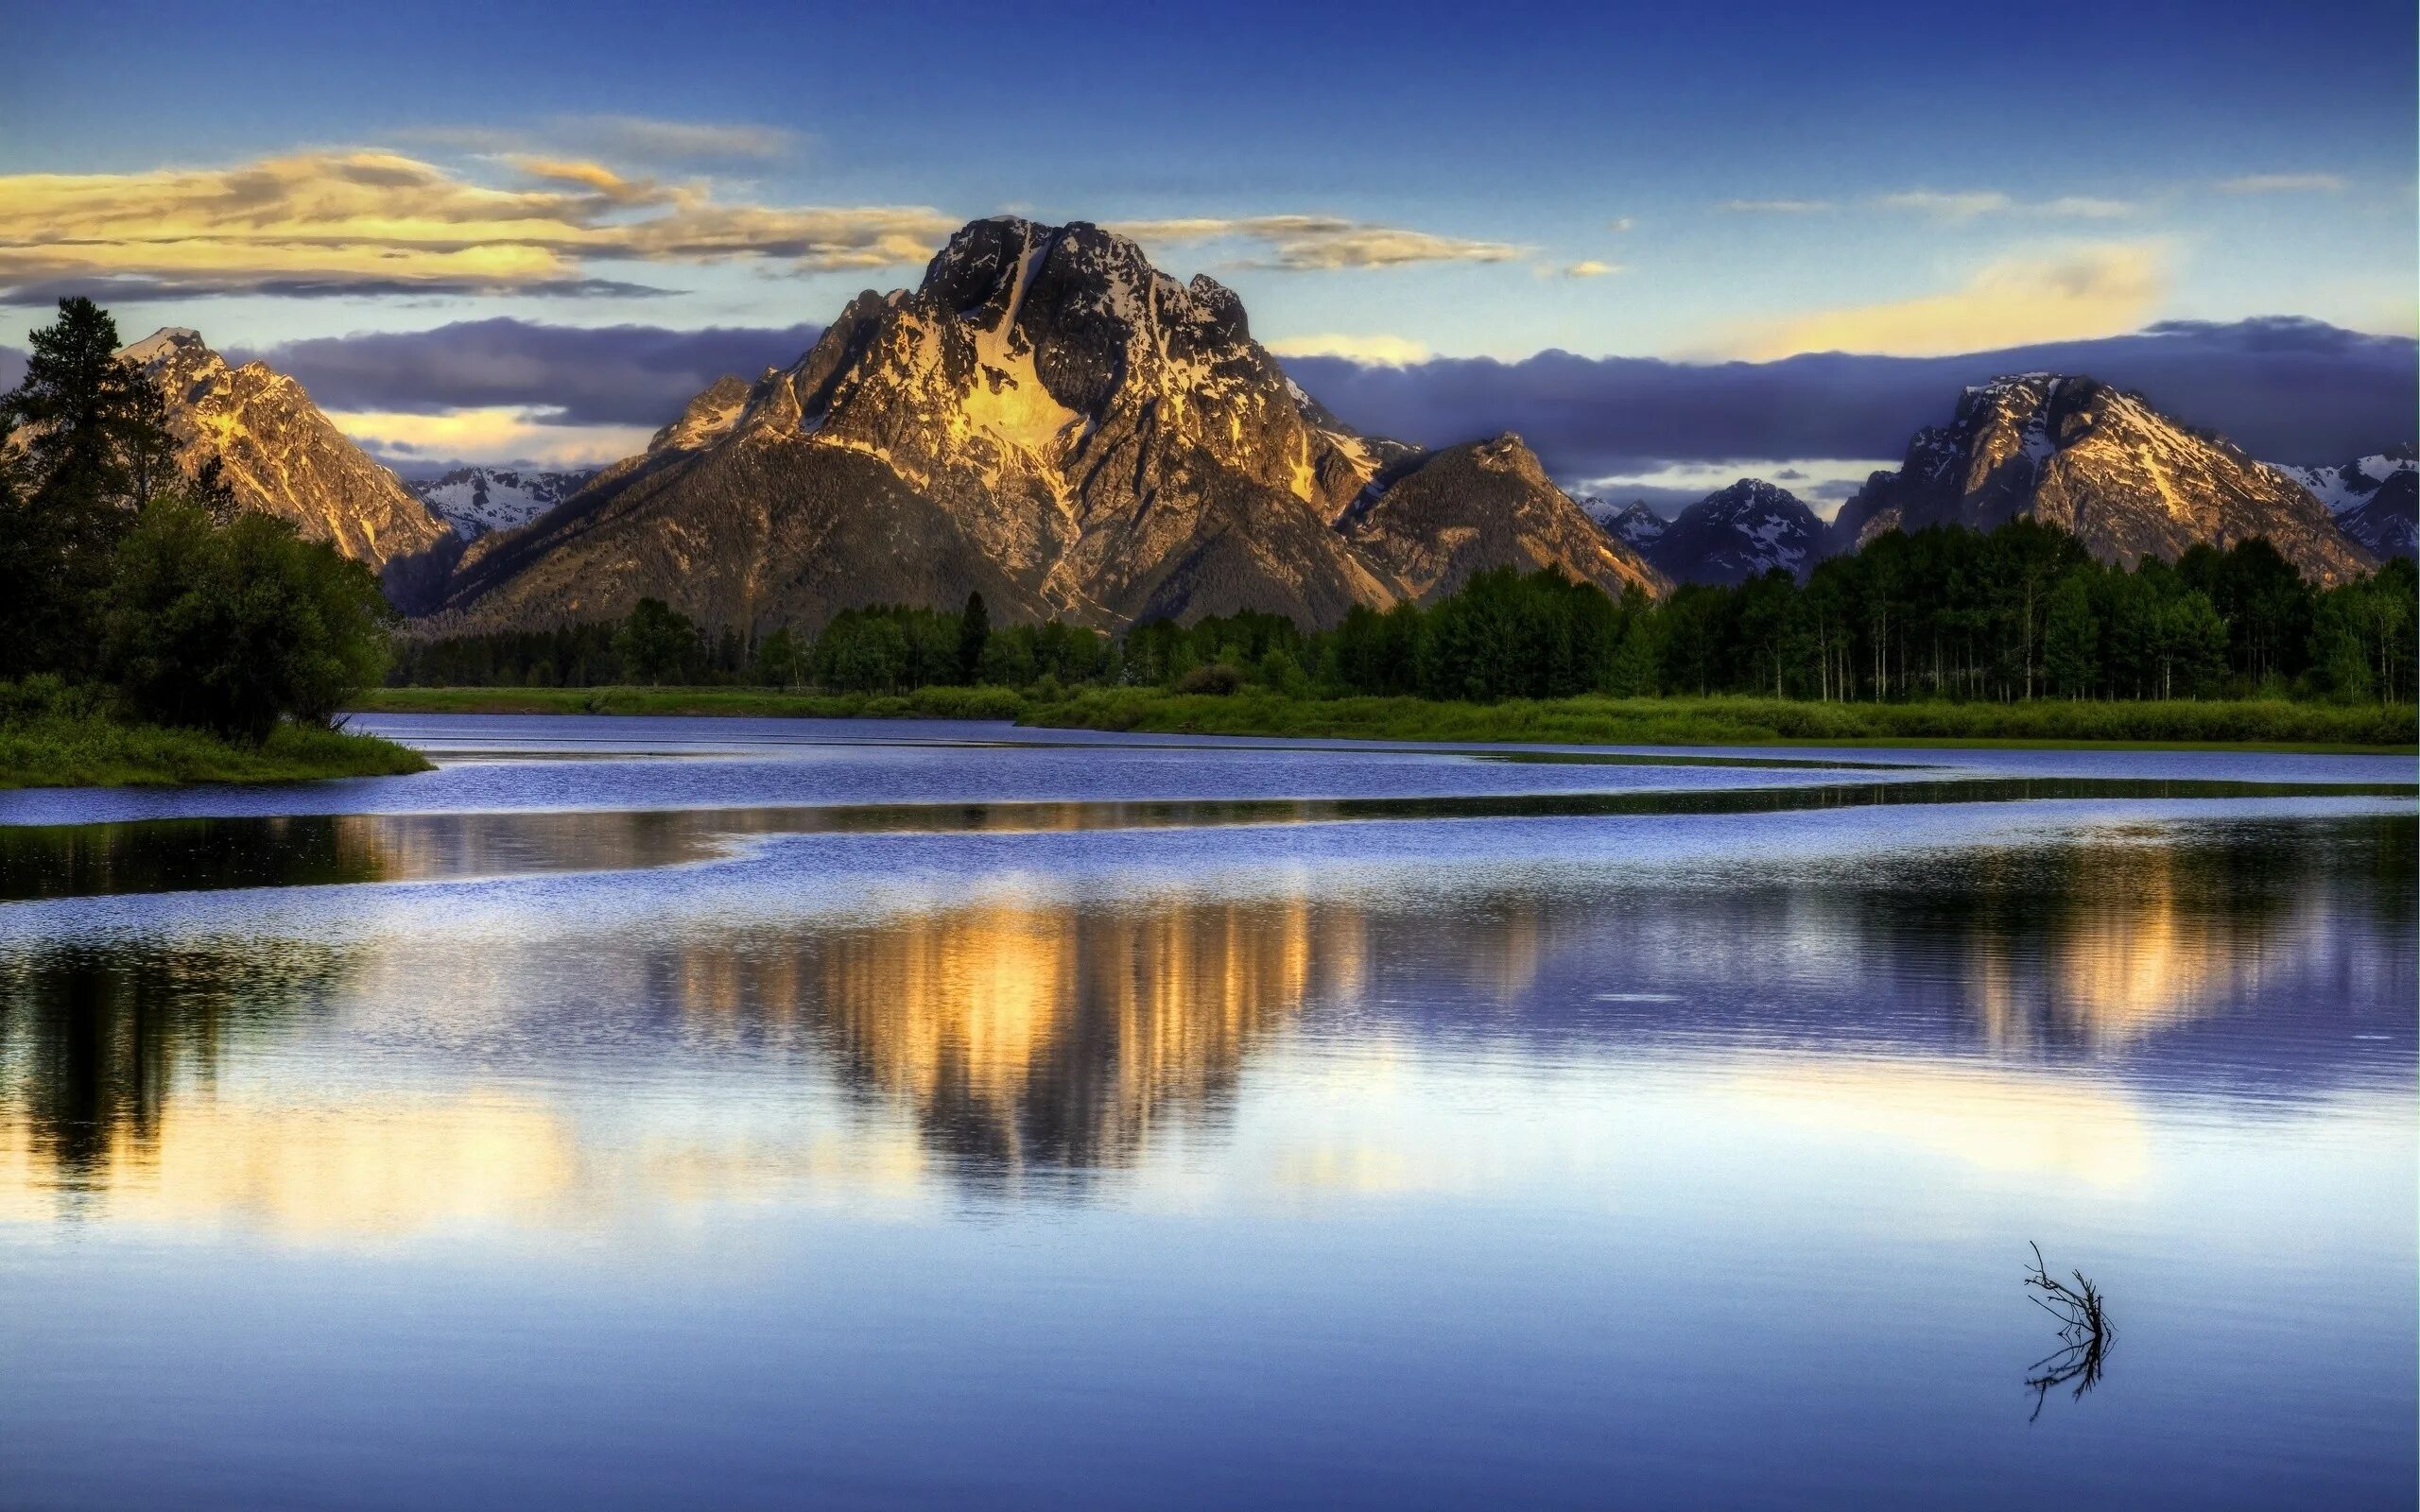 Красивые картинки на заставку. Природа. Горы и вода. Красивая природа. Горное озеро.